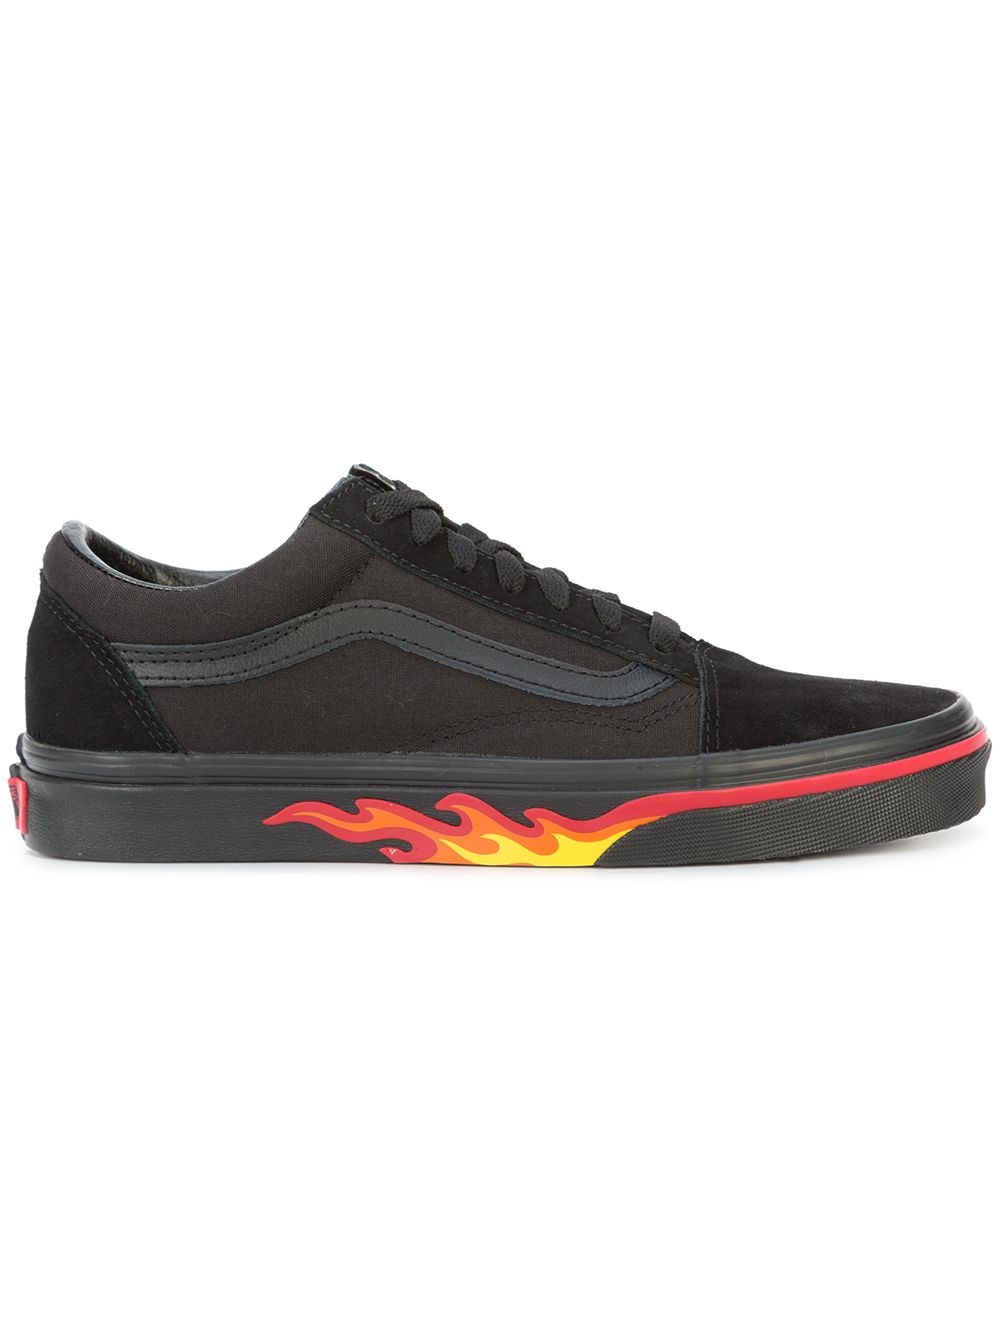 Vans Old Skool Flame lace-up sneakers - Black von Vans